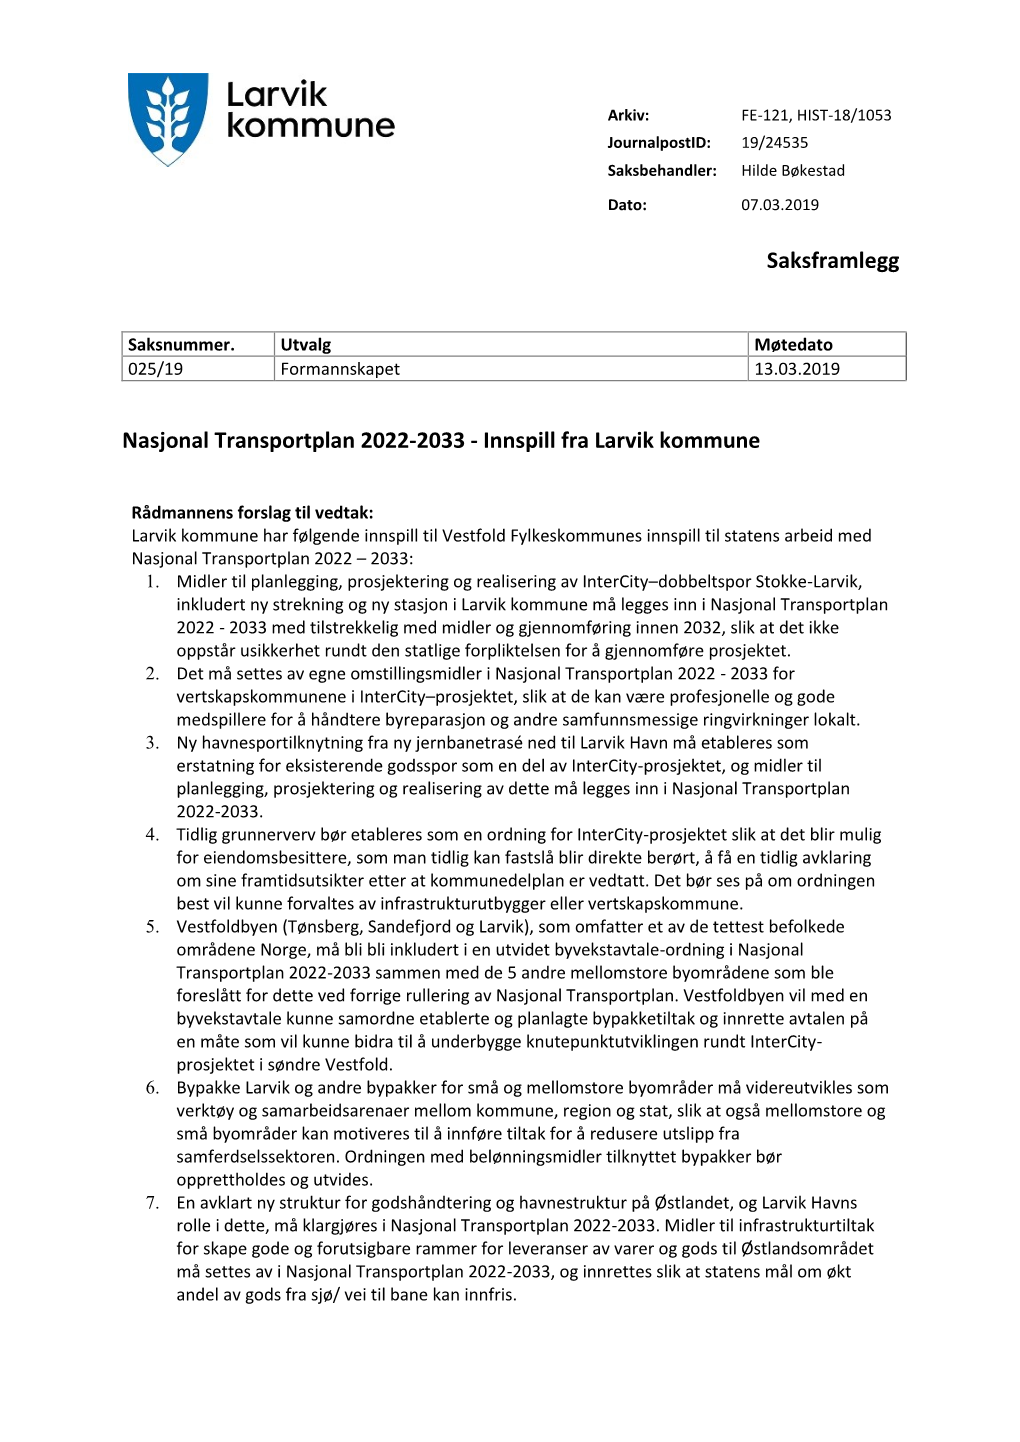 Nasjonal Transportplan 2022-2033 - Innspill Fra Larvik Kommune